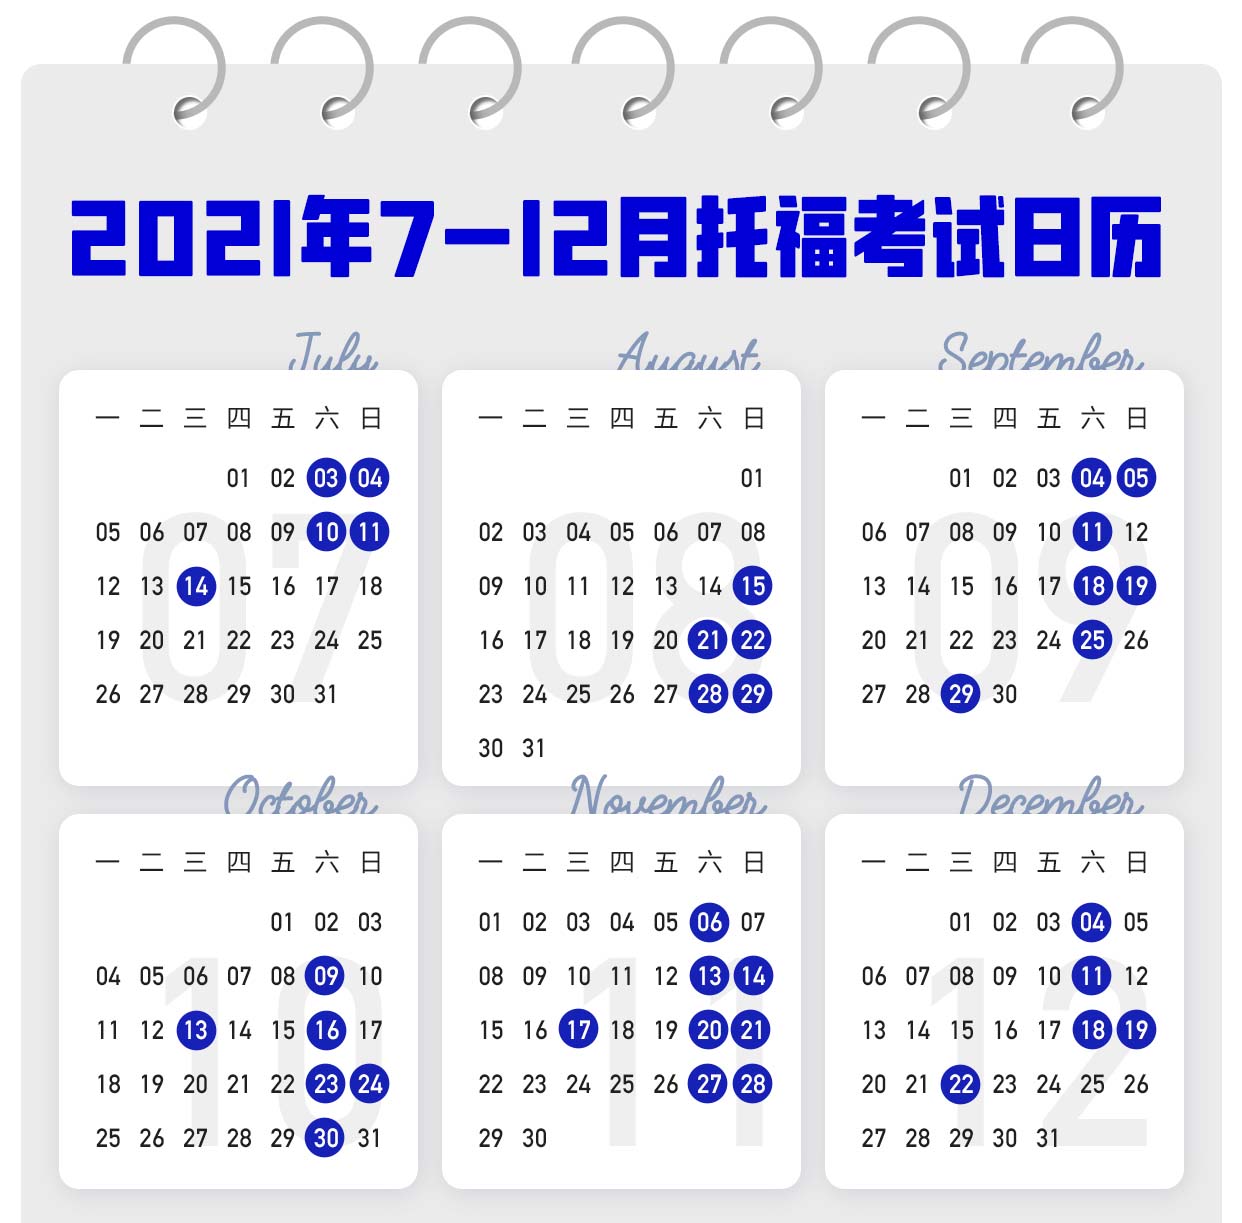 2021年7-12月托福/雅思/SAT/ACT考试日历